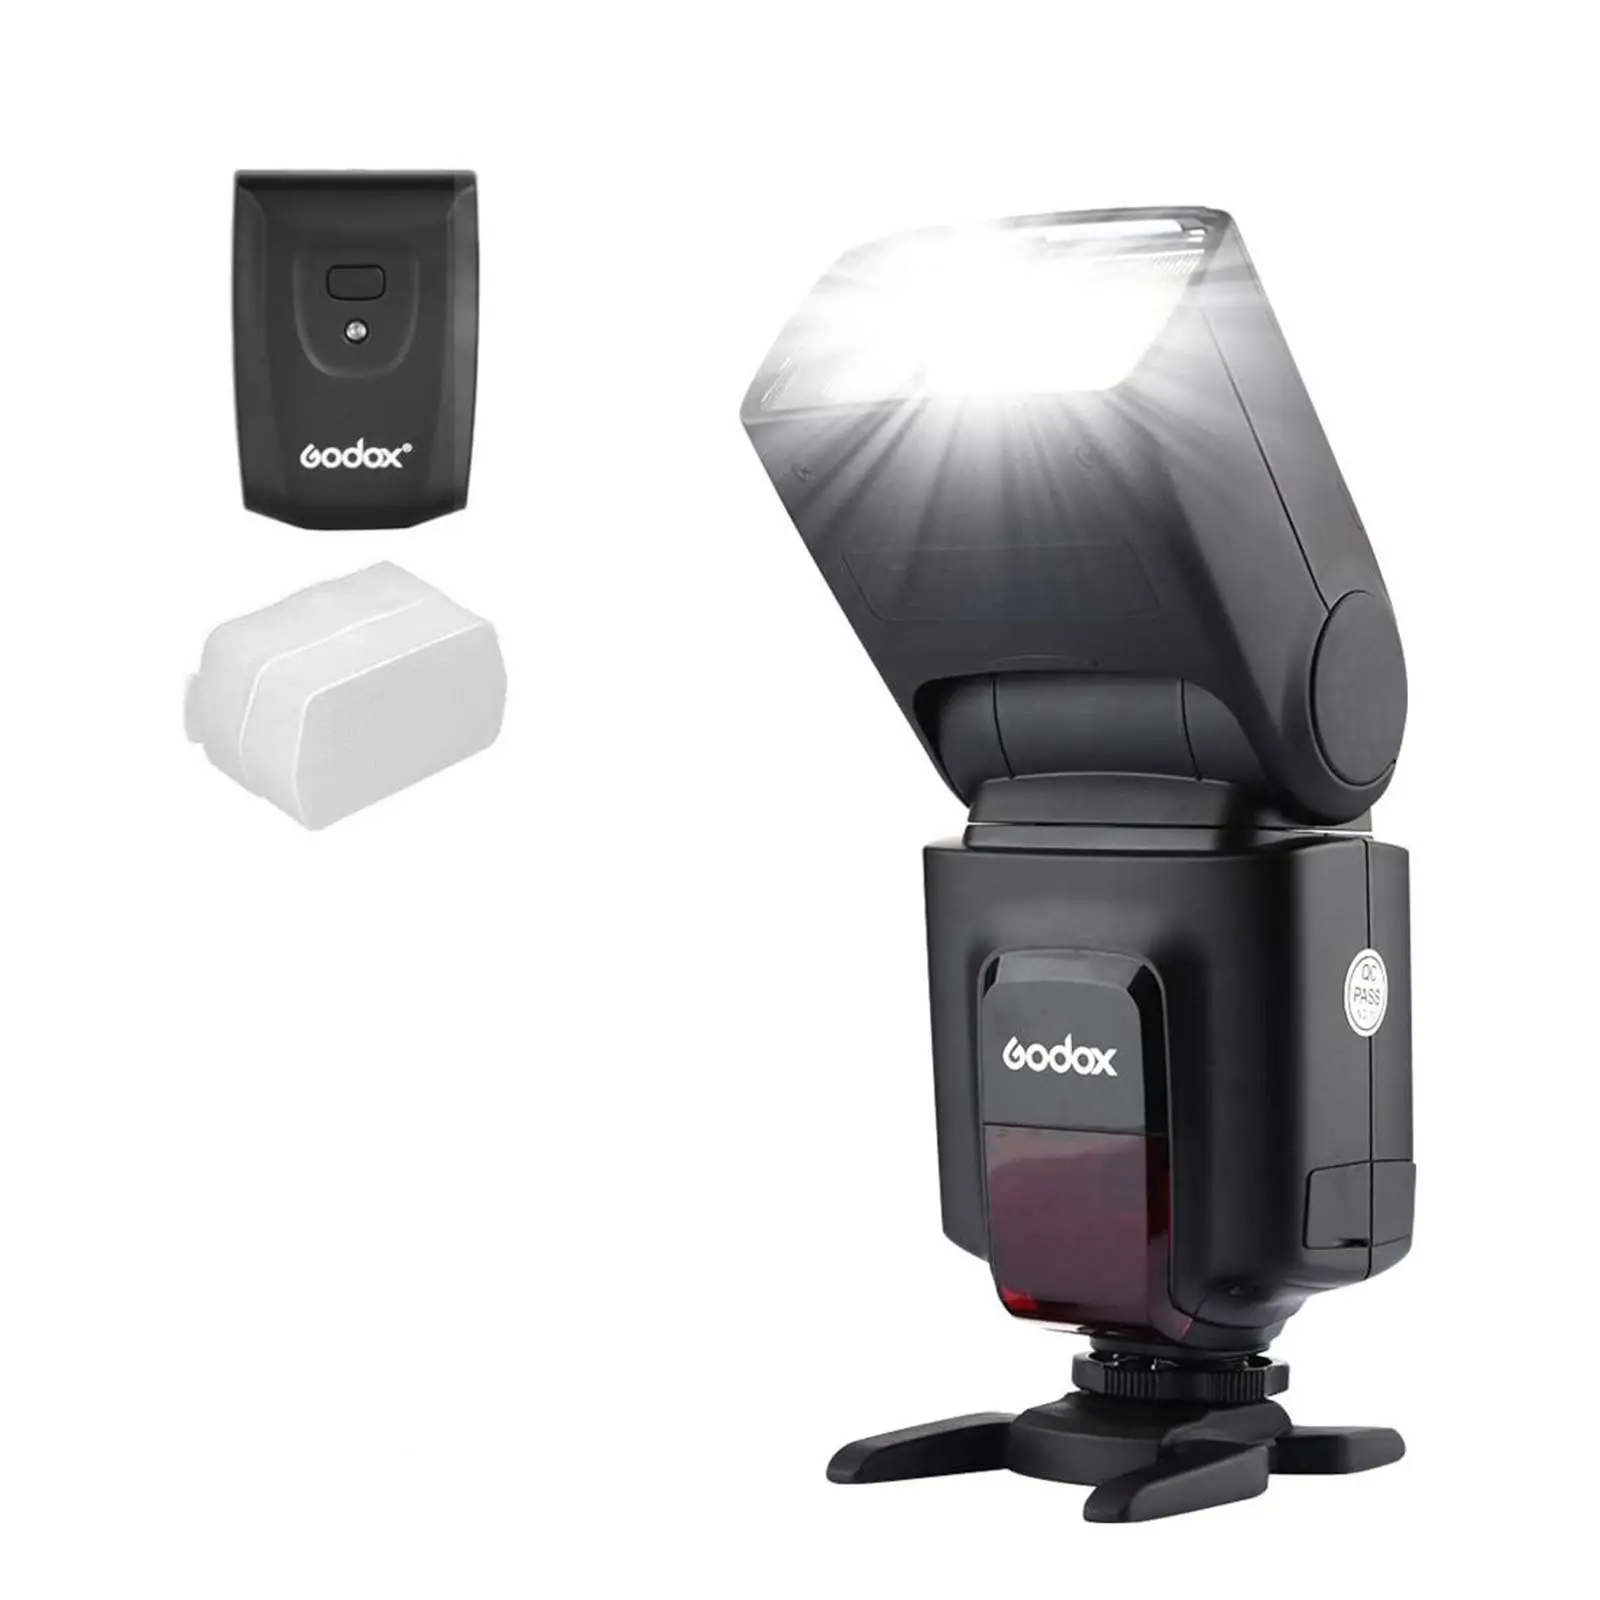 Digital S Godox Tt520 Camera Video Flash